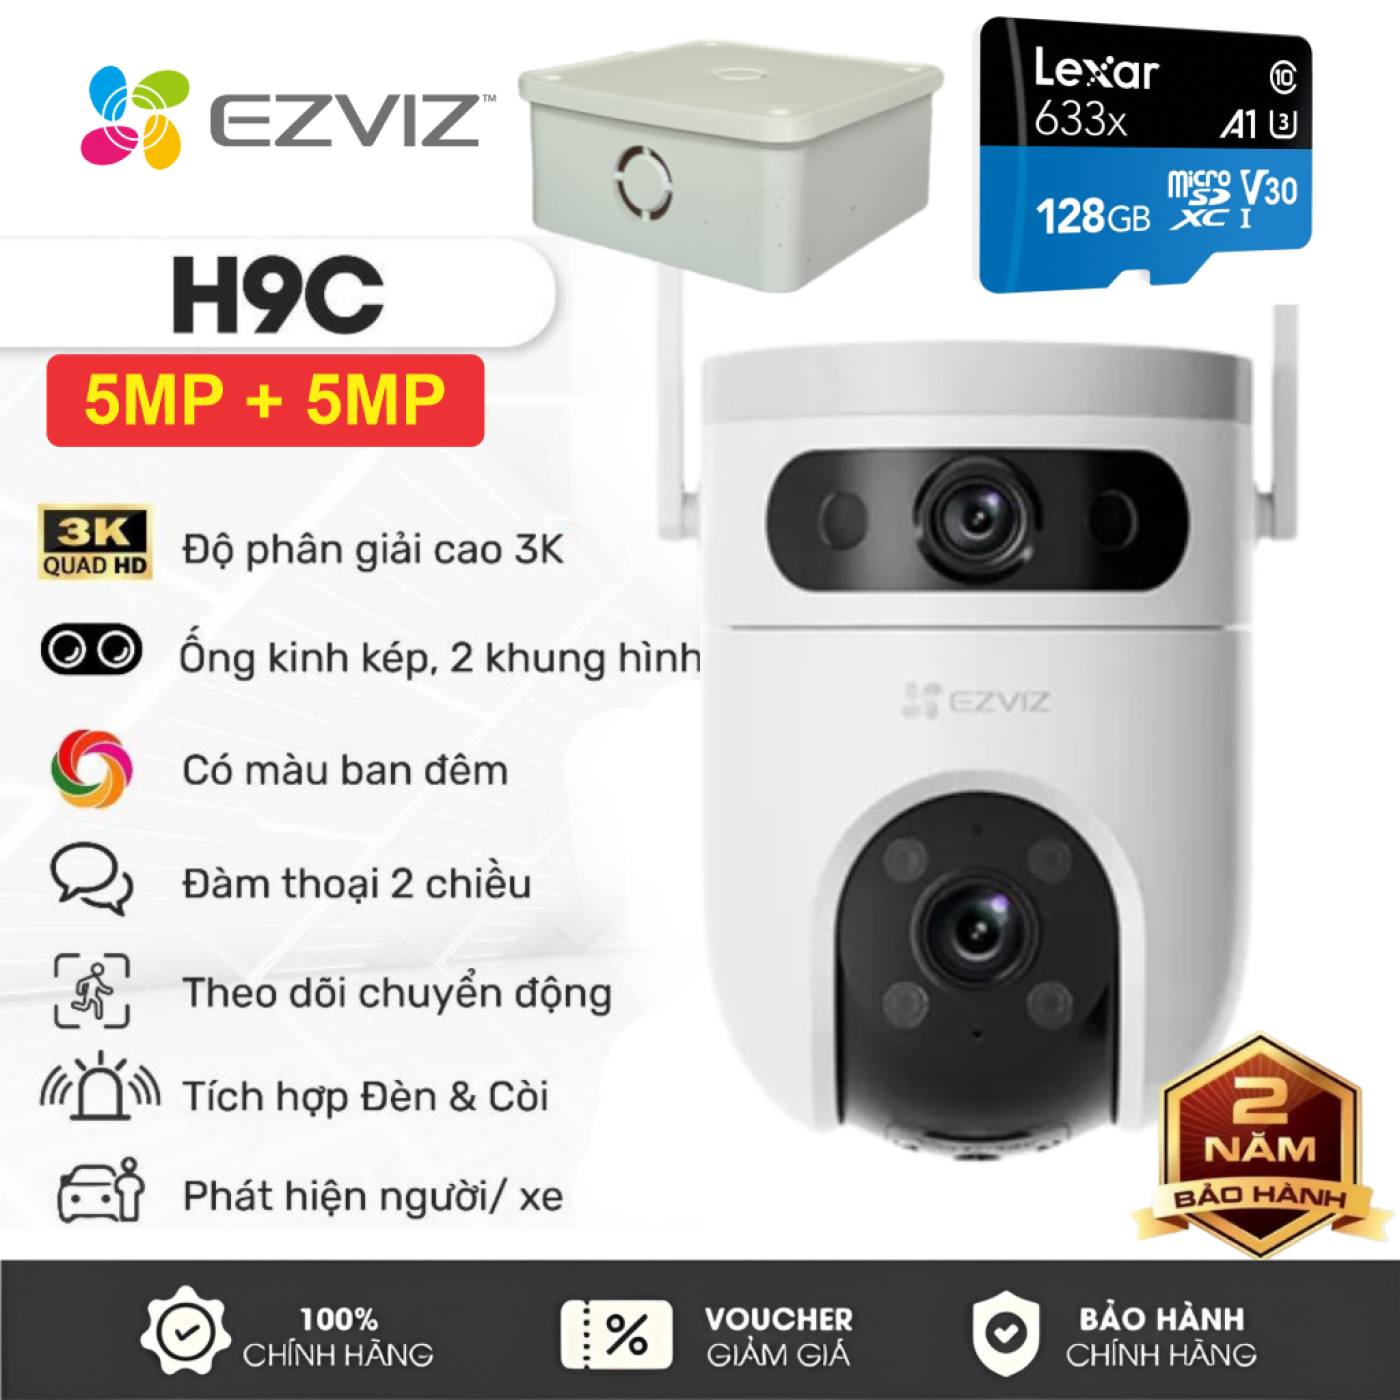 Combo Camera Ngoài Trời Ezviz 2 Mắt (5MP+5MP) H9C + Thẻ 128GB + Hộp Kỹ Thuật